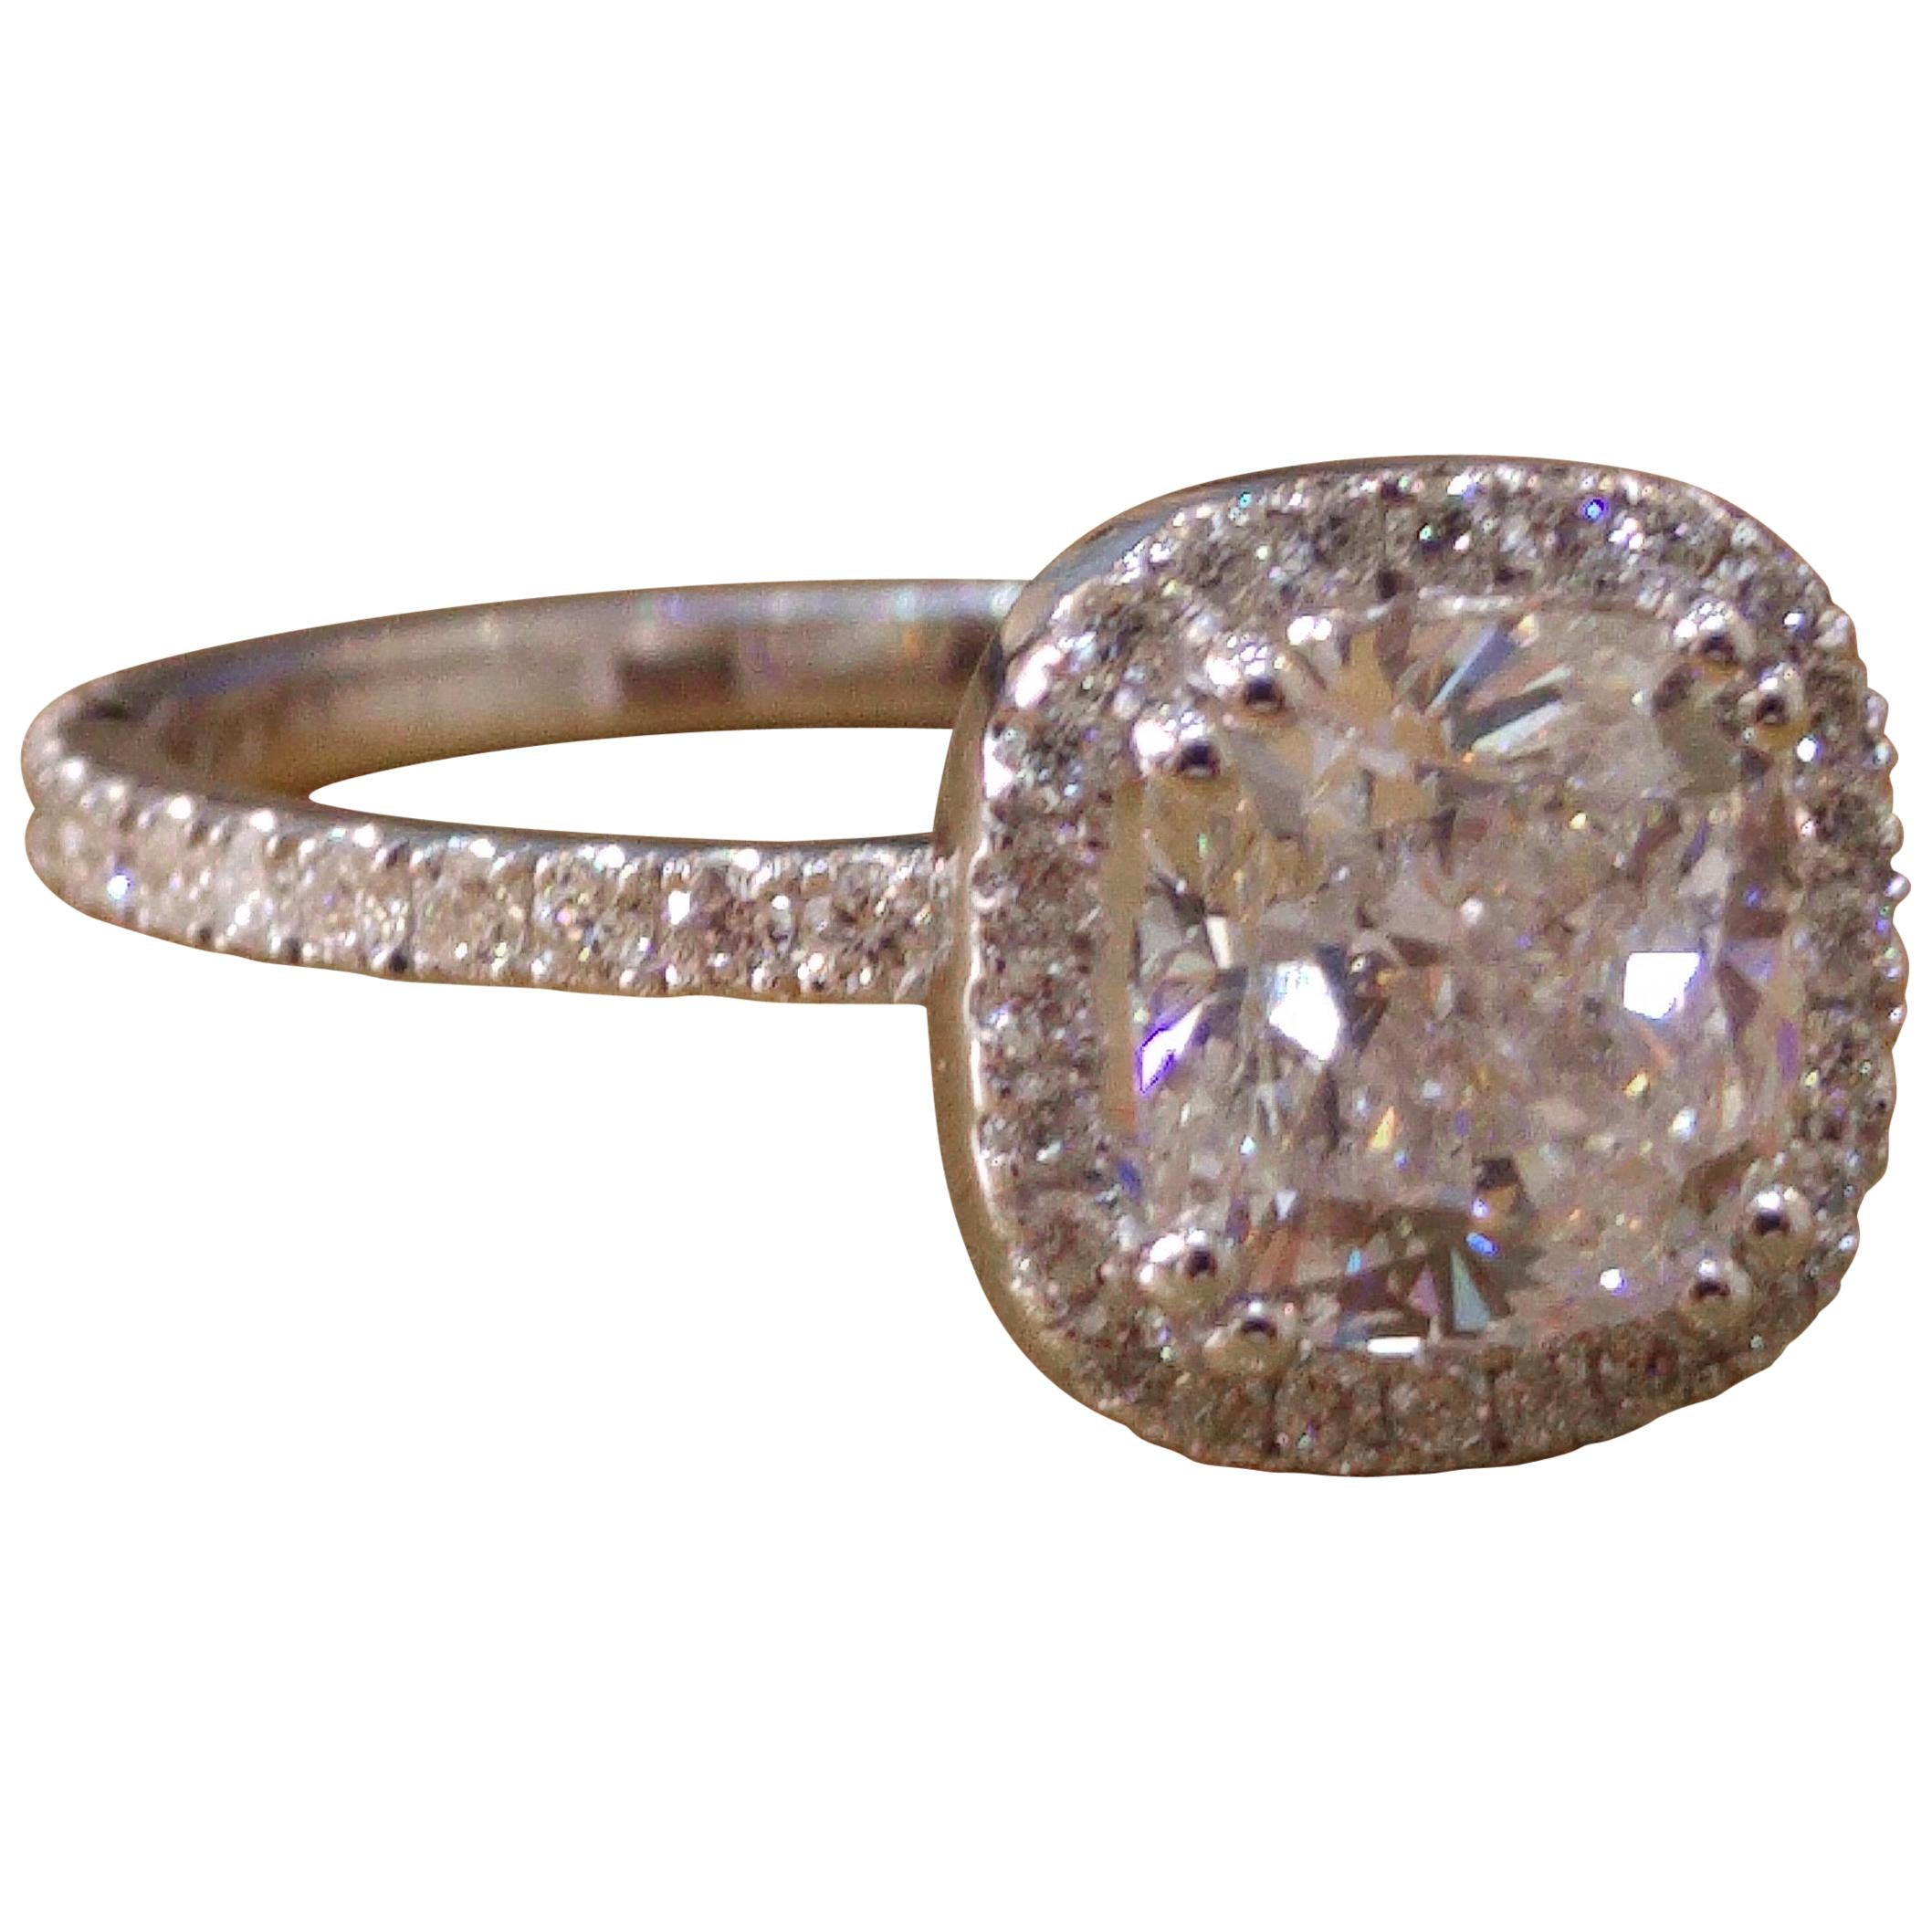 1 1/2 Carat 14 Karat White Gold Cushion Diamond Ring, Diamond Halo Ring